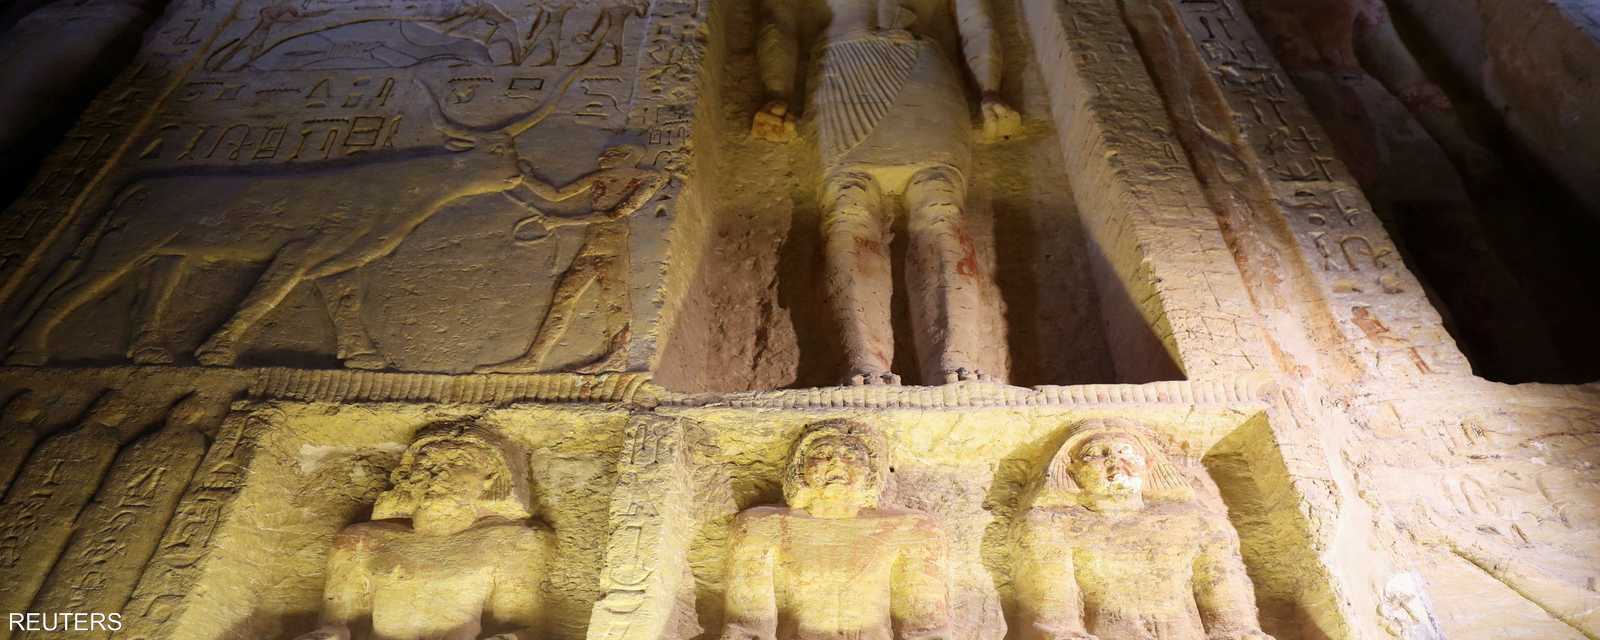 تضم المقبرة نقوشا وزخارف ملونة على جدرانها